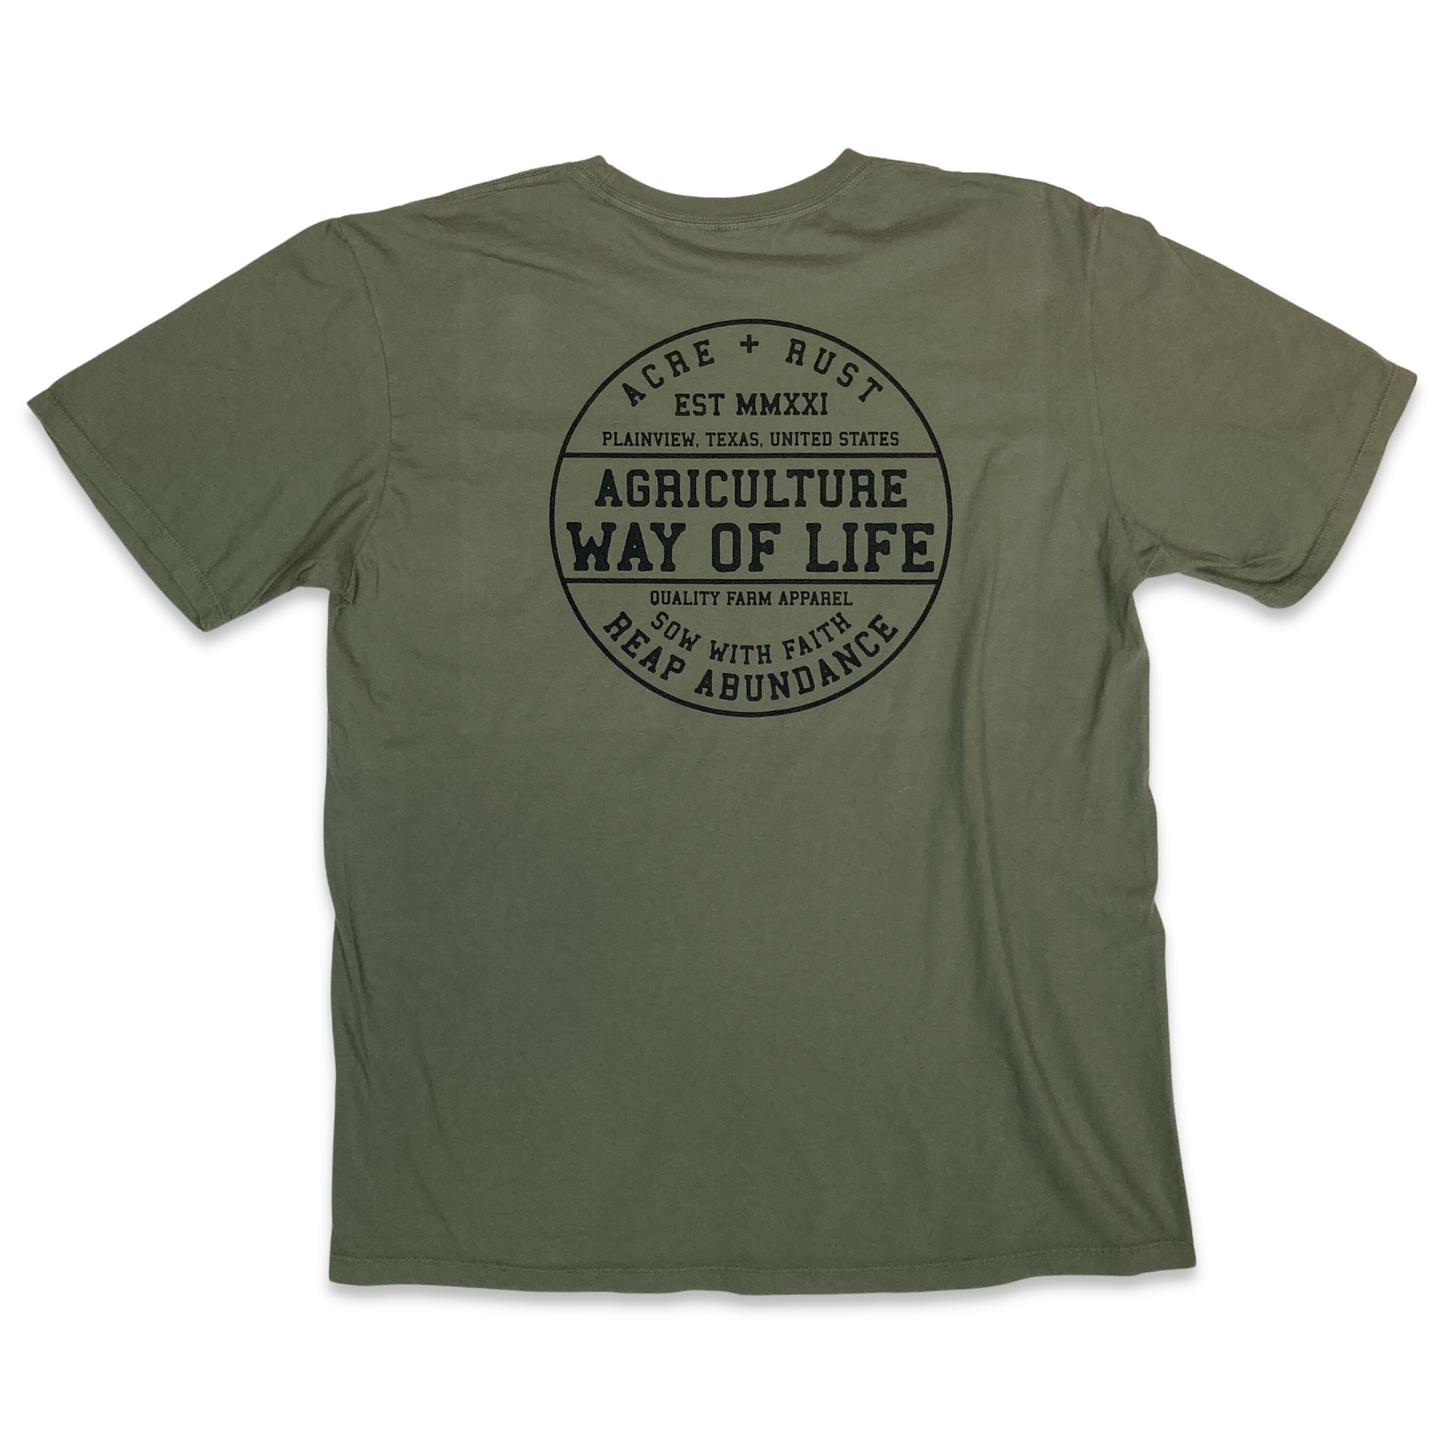 Way of Life T-Shirt